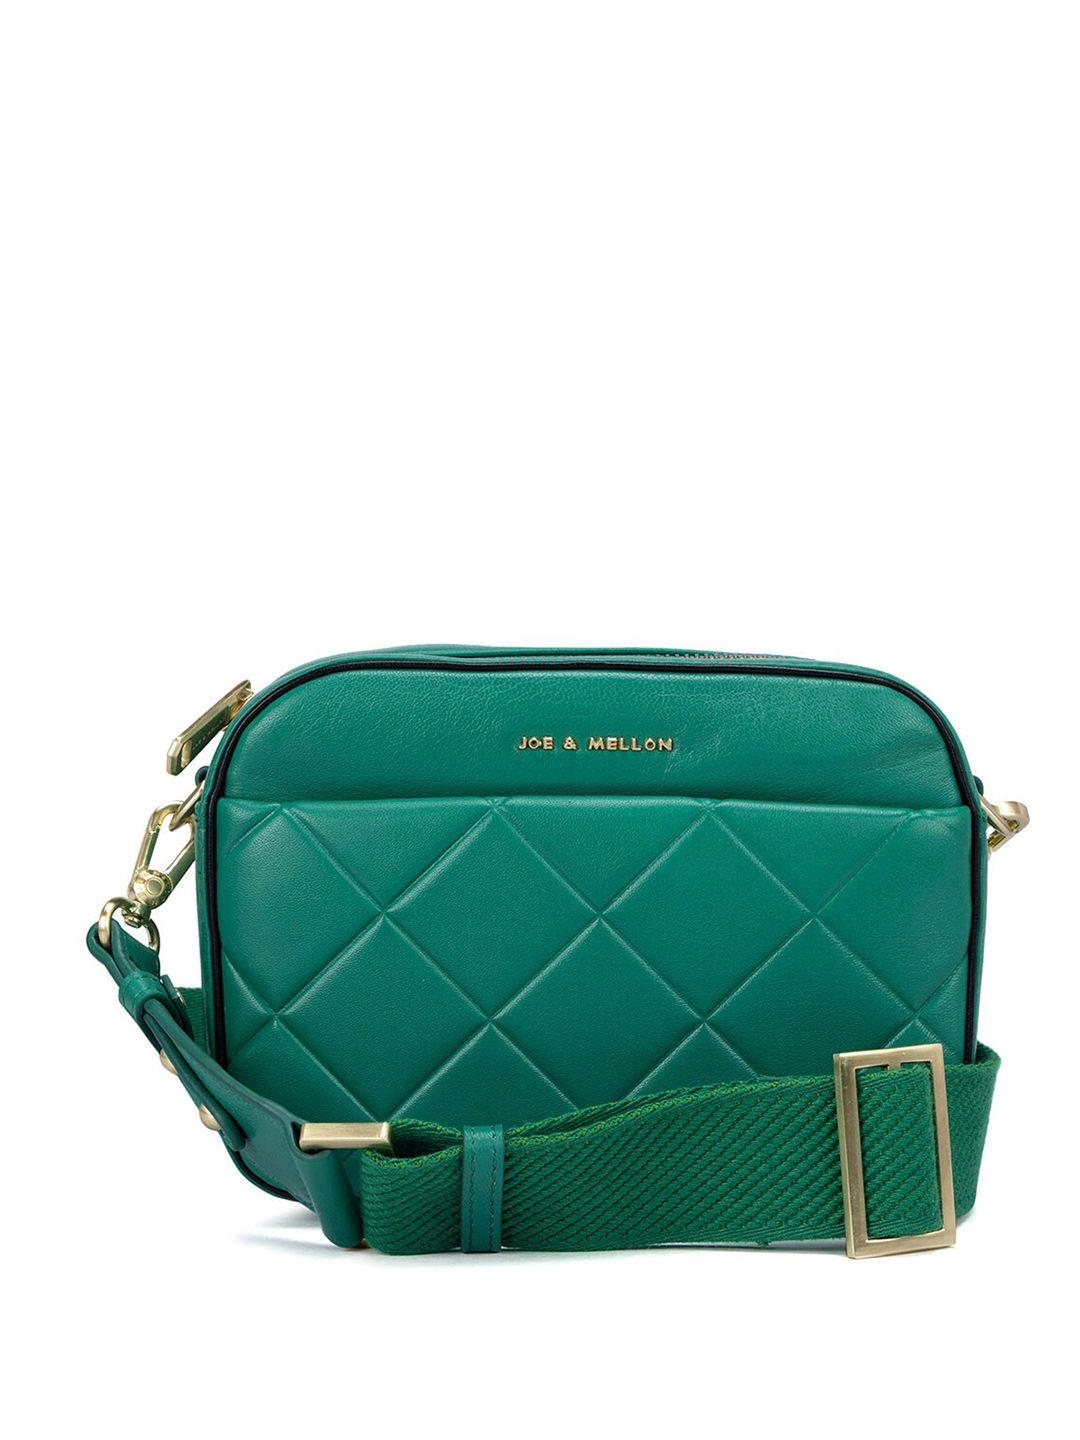 joe & mellon women green textured messenger bag